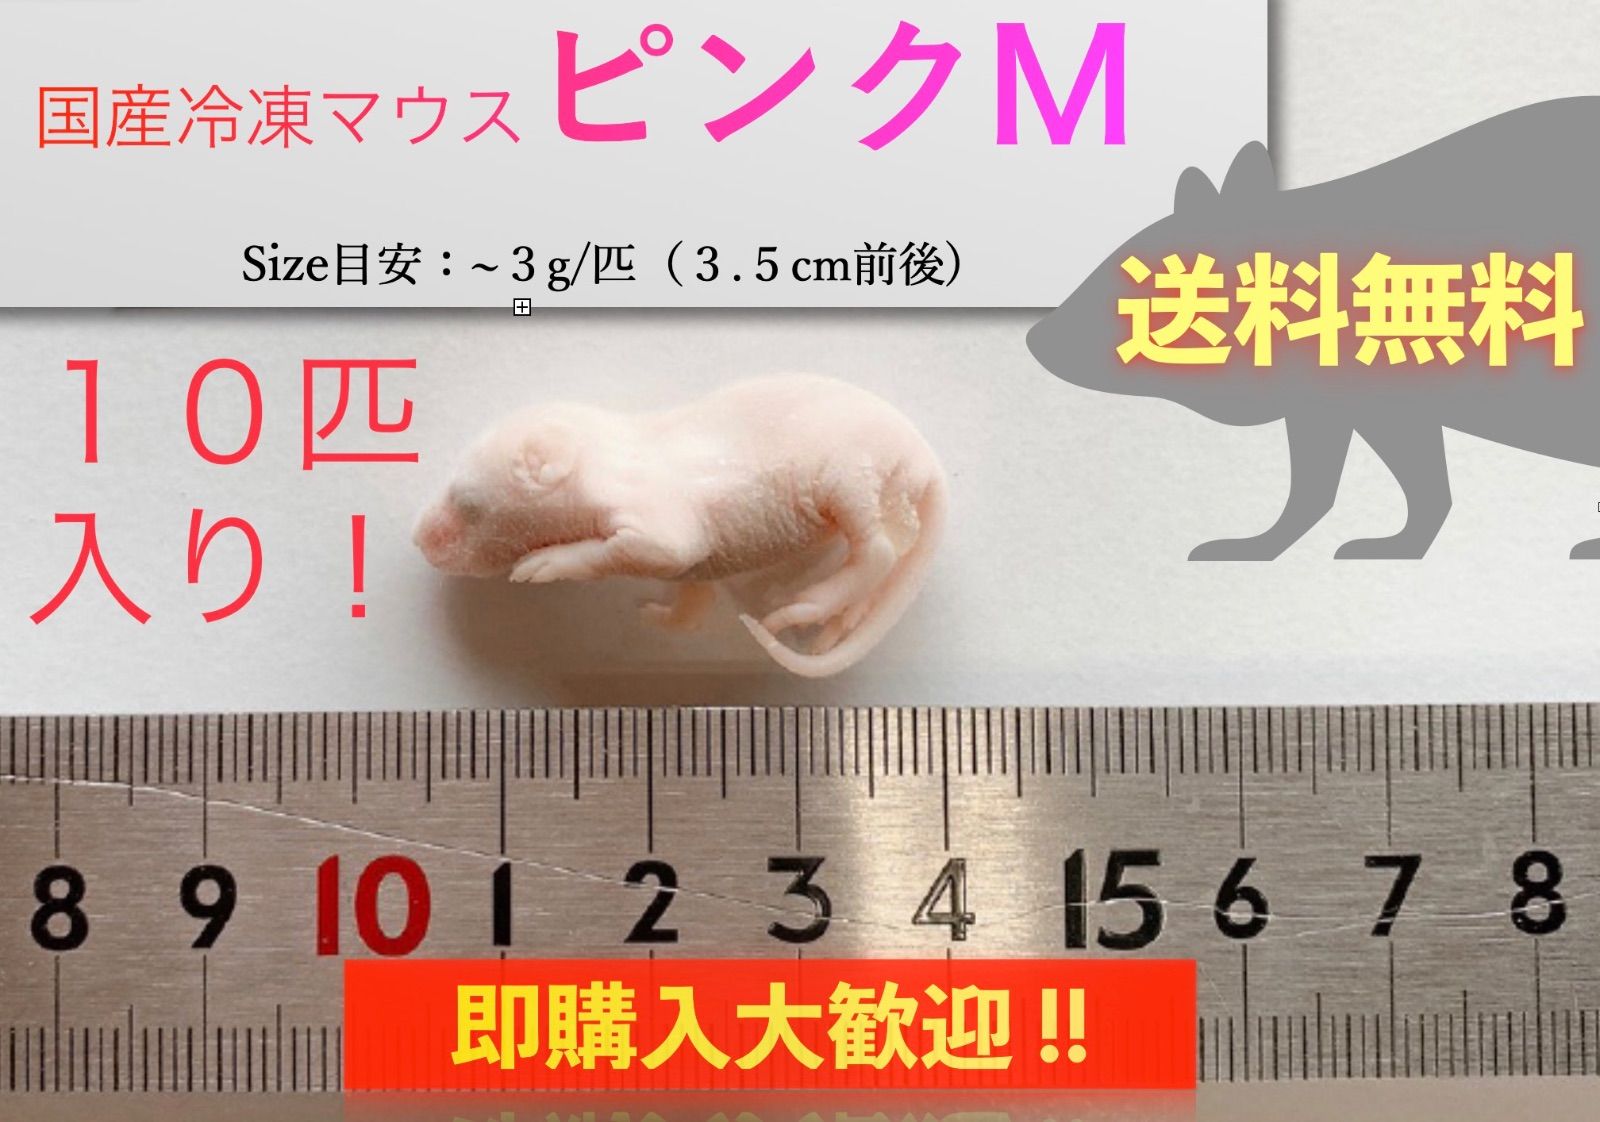 国産冷凍マウス ピンクL 10匹(地域限定送料無料) - 爬虫類・両生類のエサ